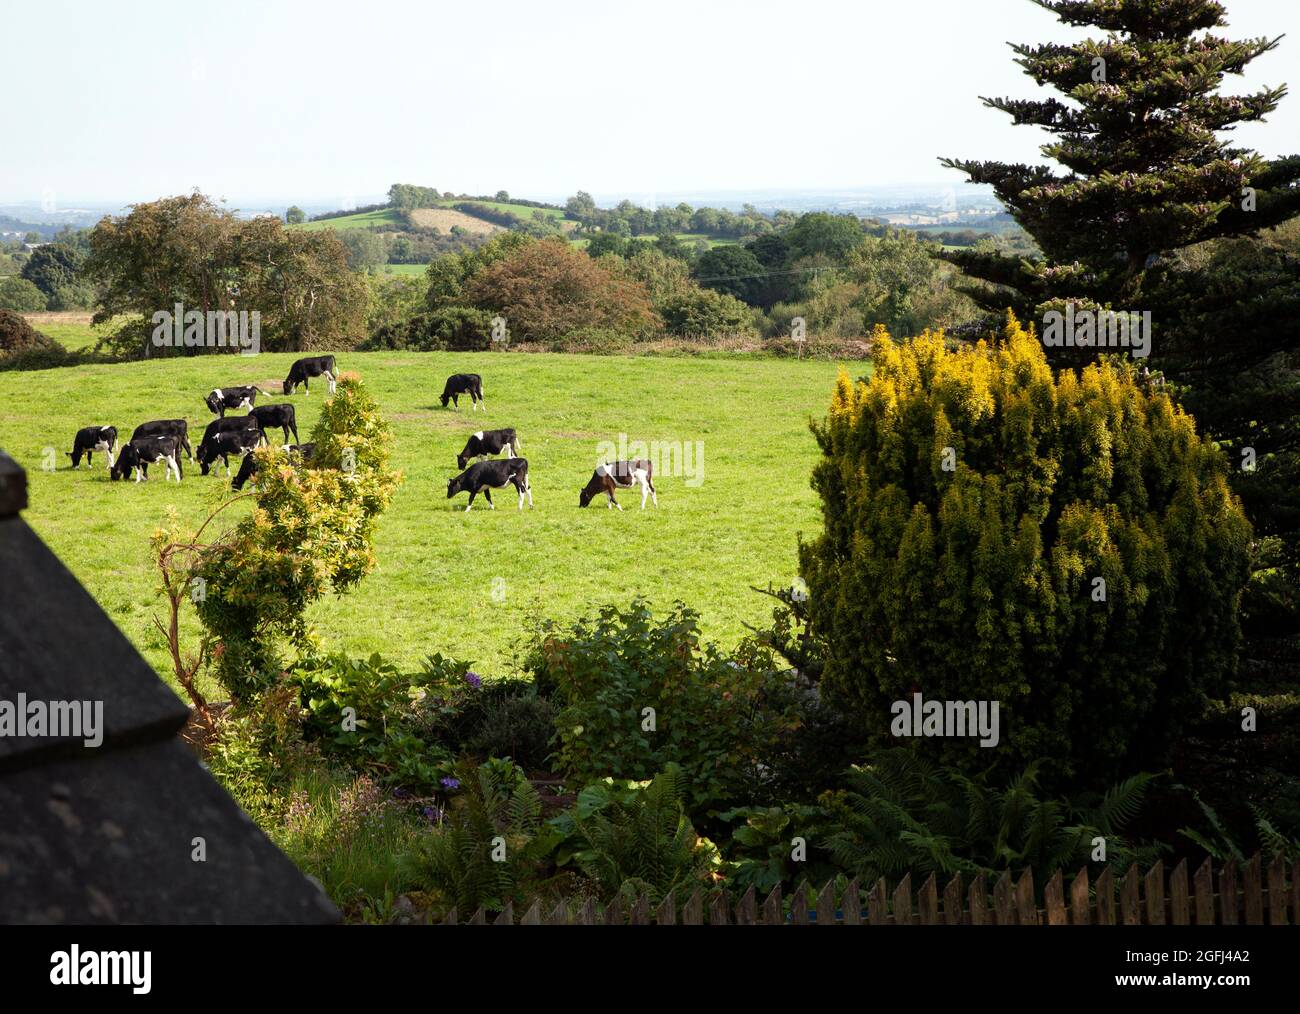 Los becerros disfrutan de su primera excursión en pasturas, país de Drumlin, Co Monaghan, Irlanda Foto de stock